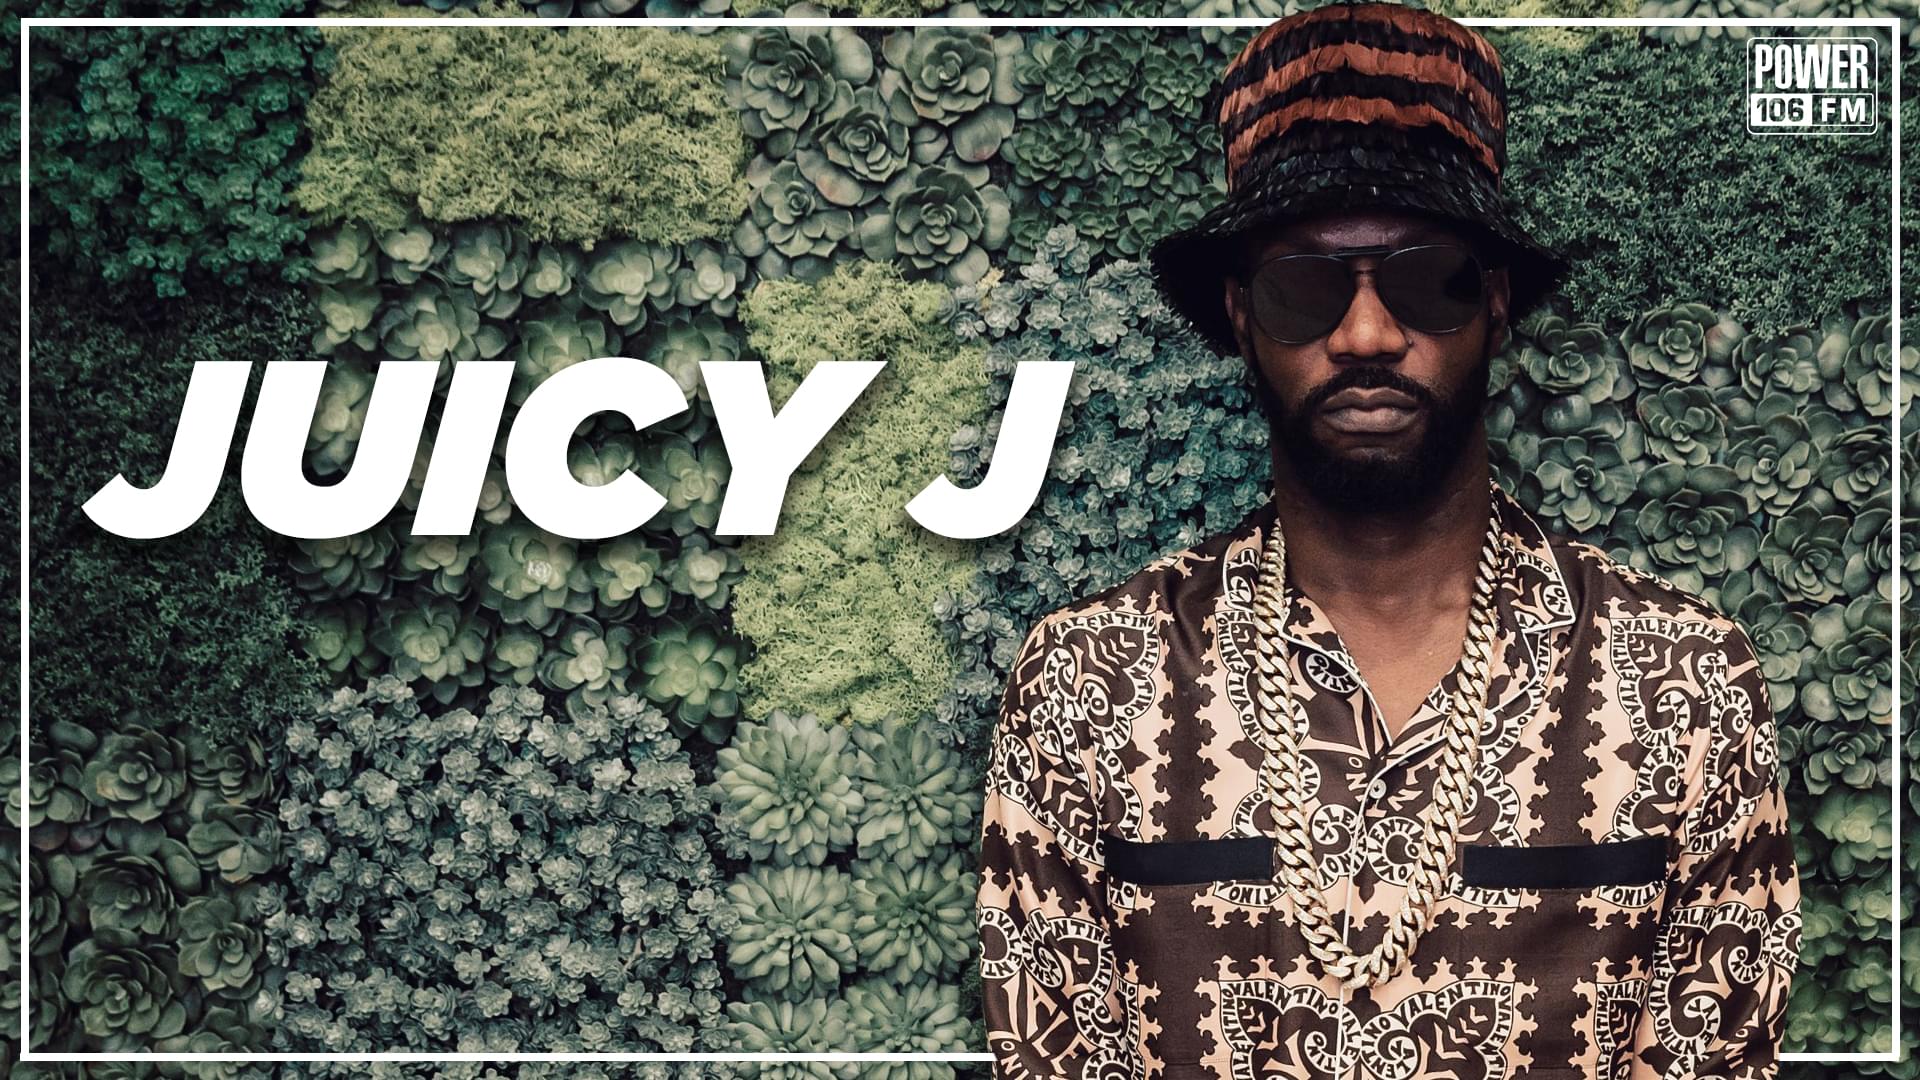 Juicy J Talks ‘Let Me See’ Video, New Business ‘Juice Box’ + Declares Soulja Boy a Genius [WATCH]